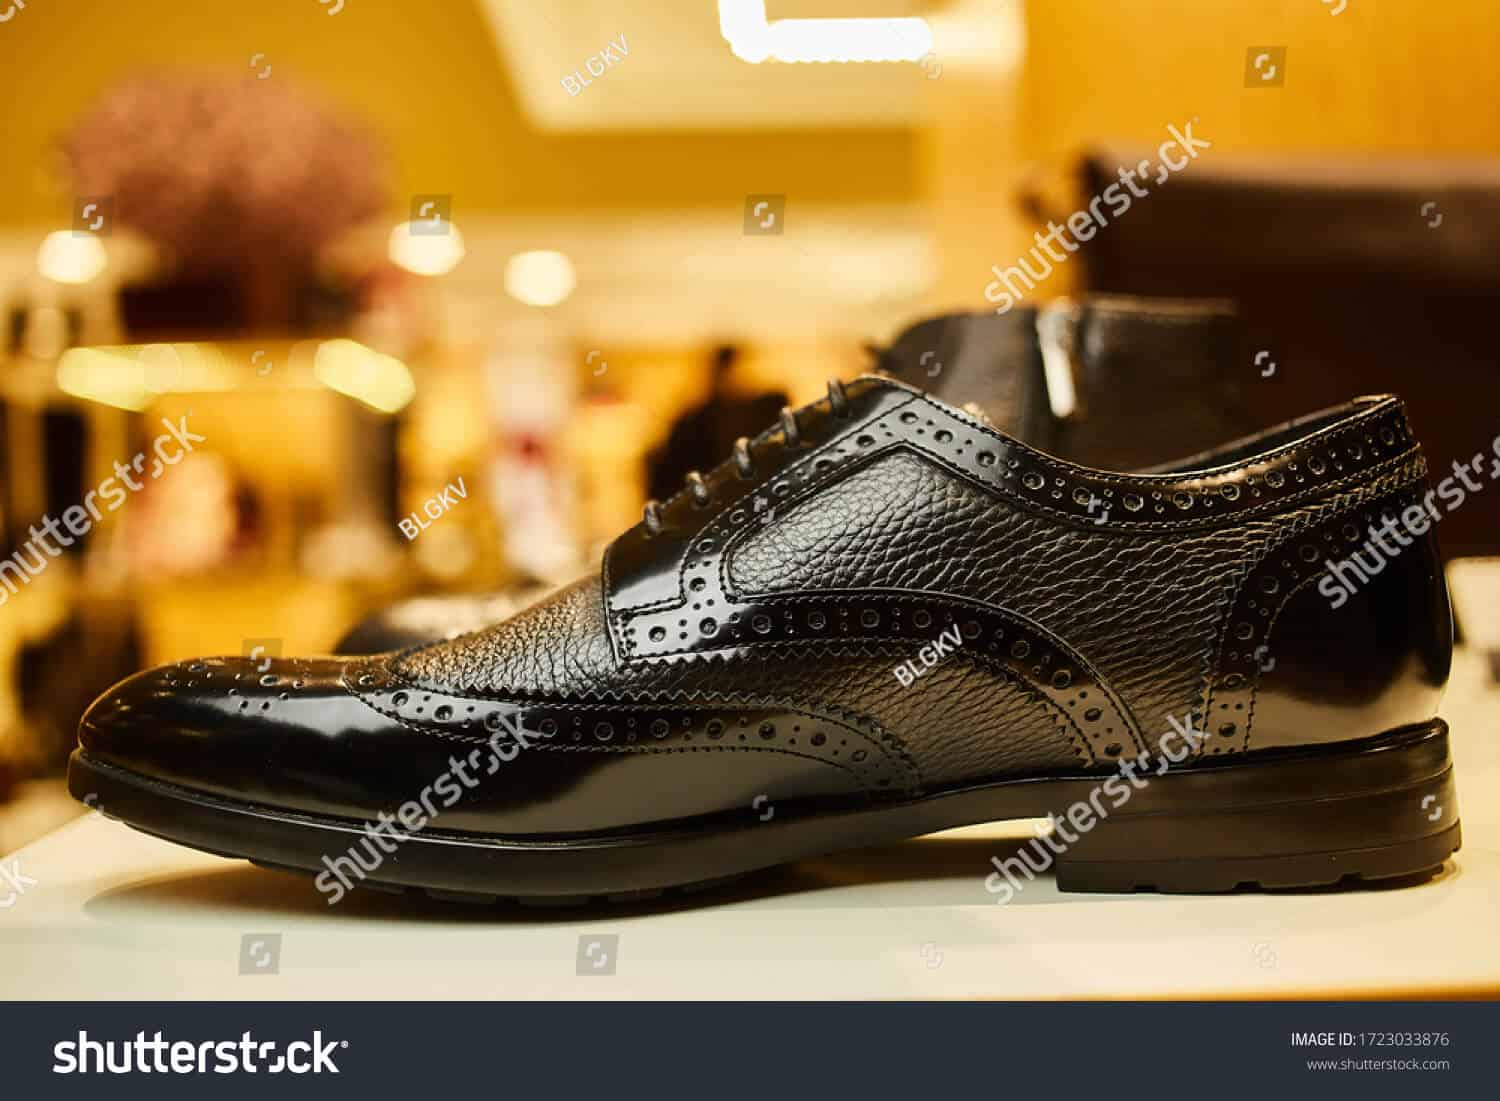 62 ngàn hình ảnh giày nam chất lượng cao trên Shutterstock